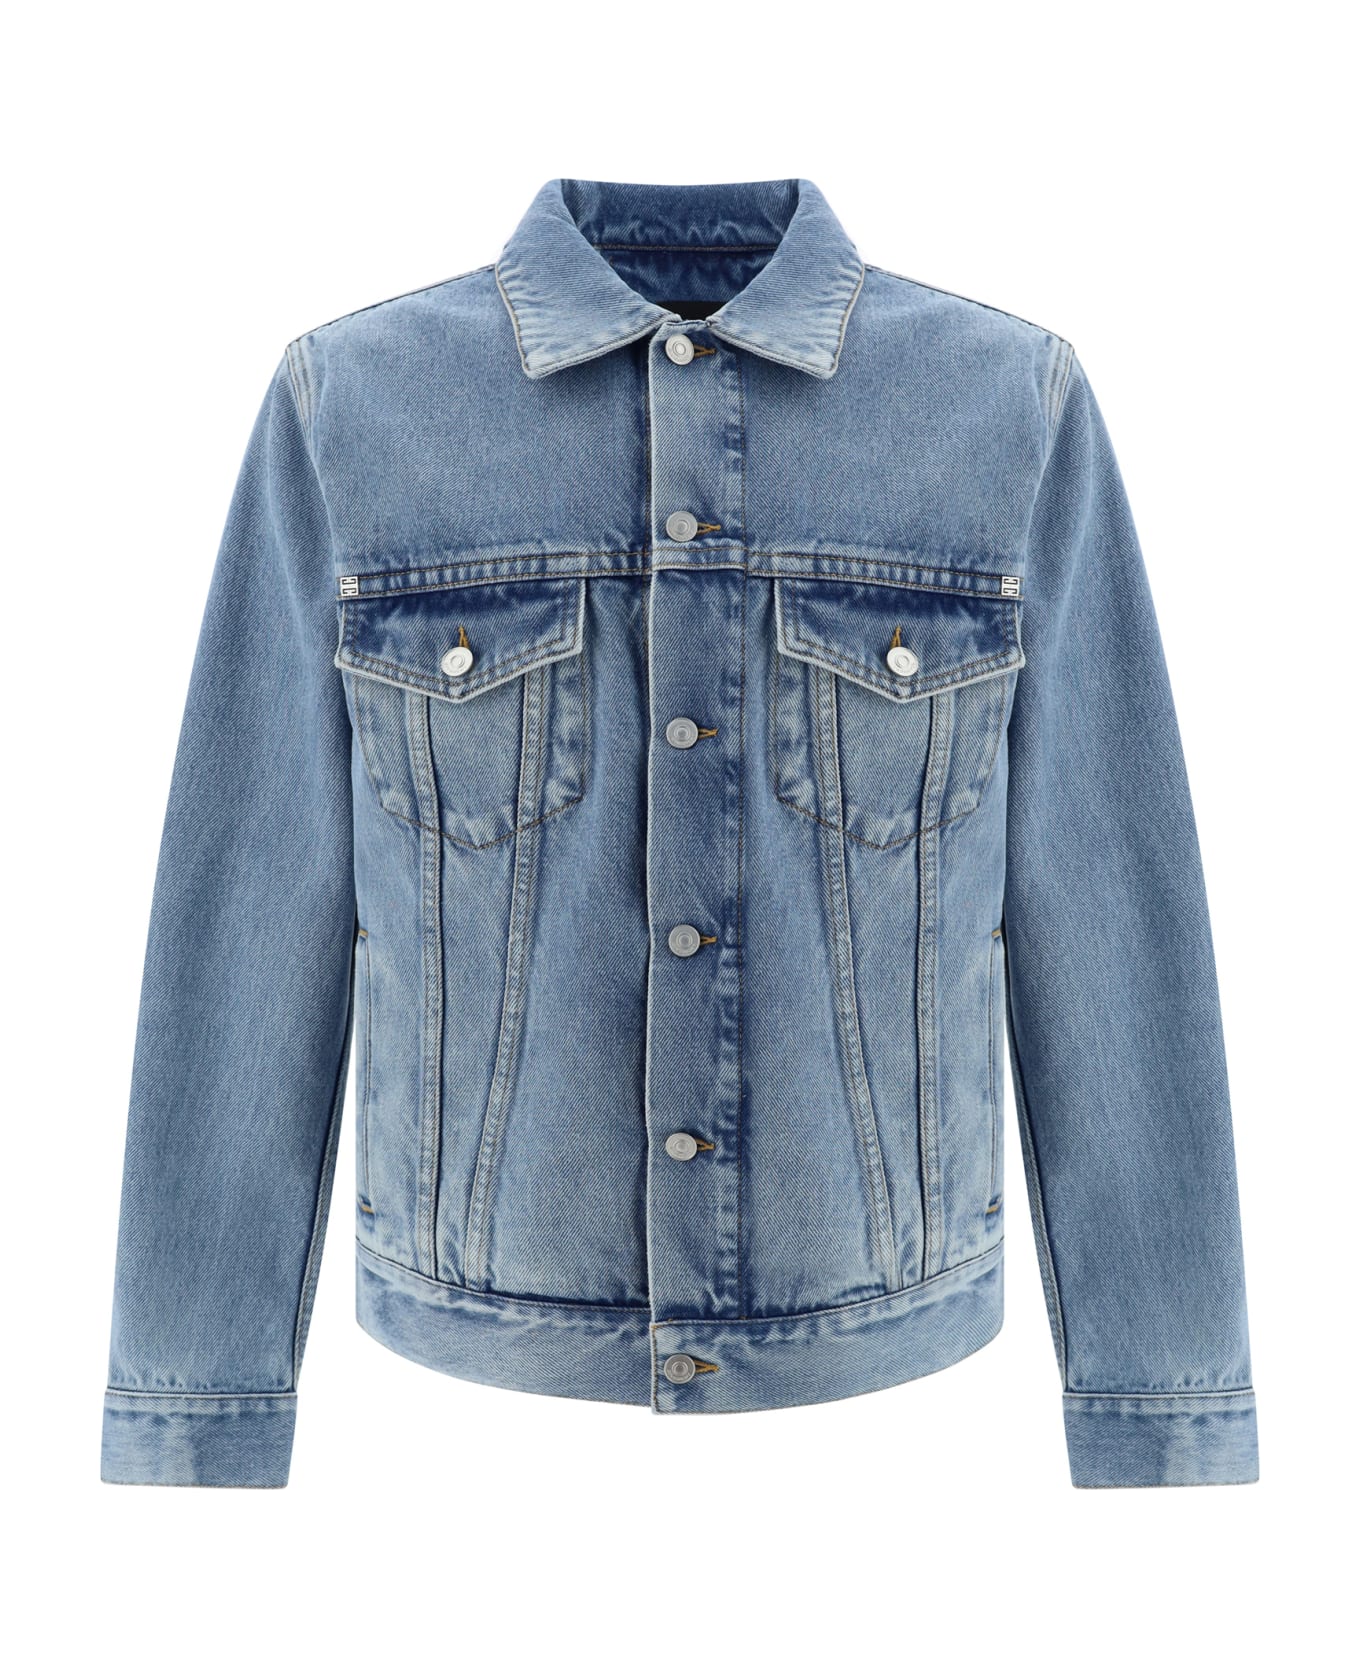 Givenchy Denim Jacket - Medium Blue ジャケット